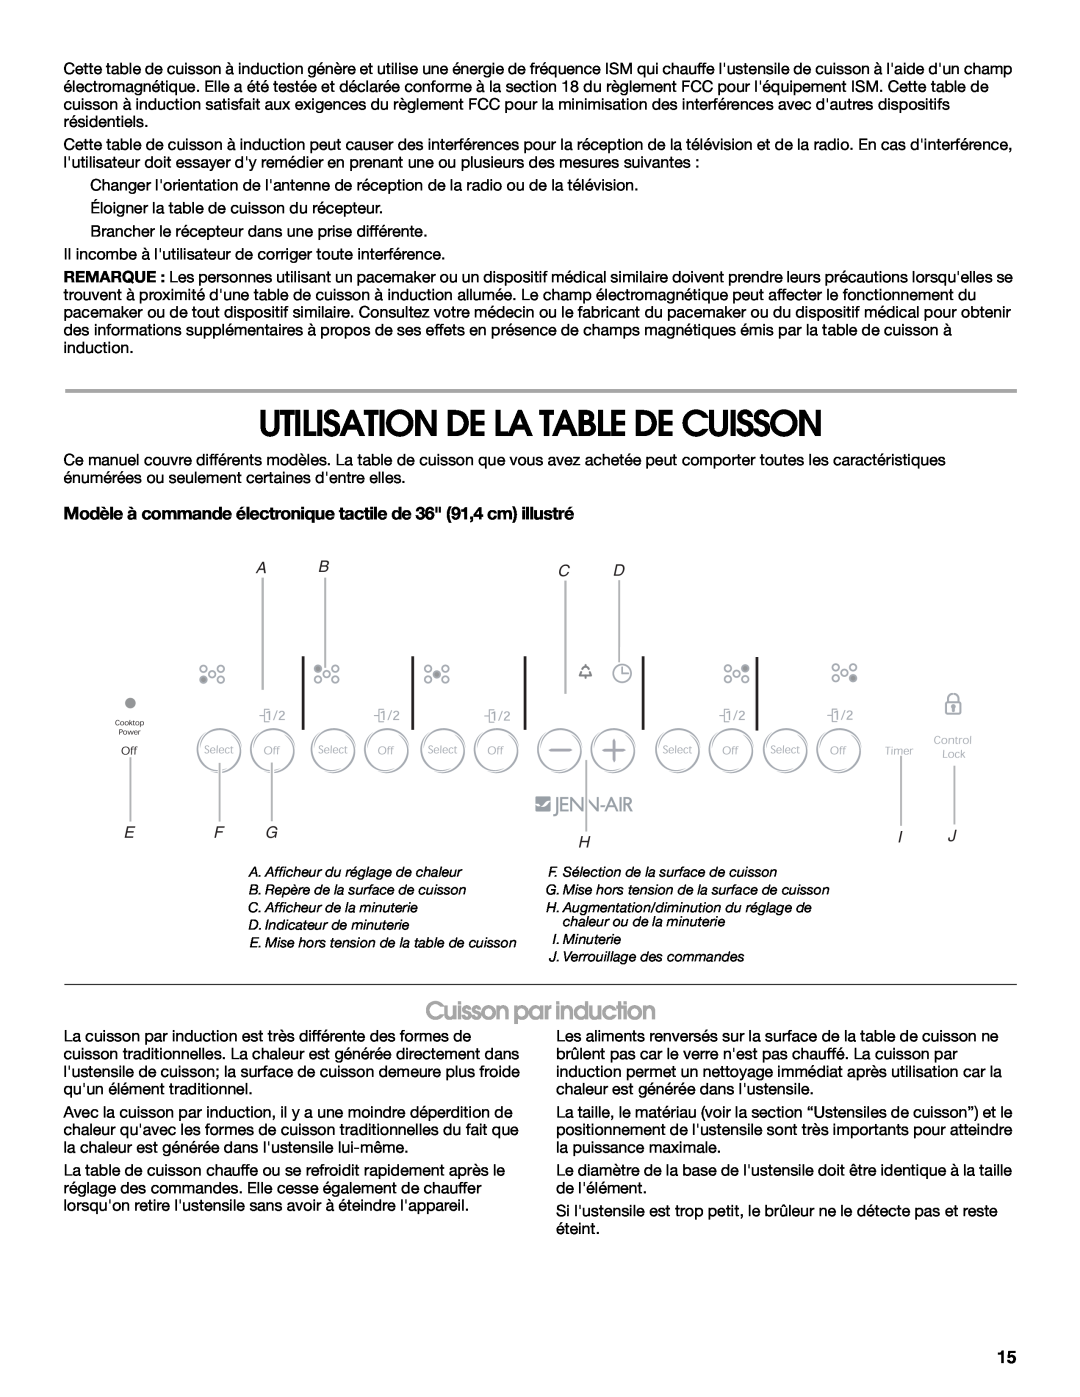 Jenn-Air W10141605 manual Utilisation De La Table De Cuisson, Cuisson par induction, E F G, Hi J, A Bc D 